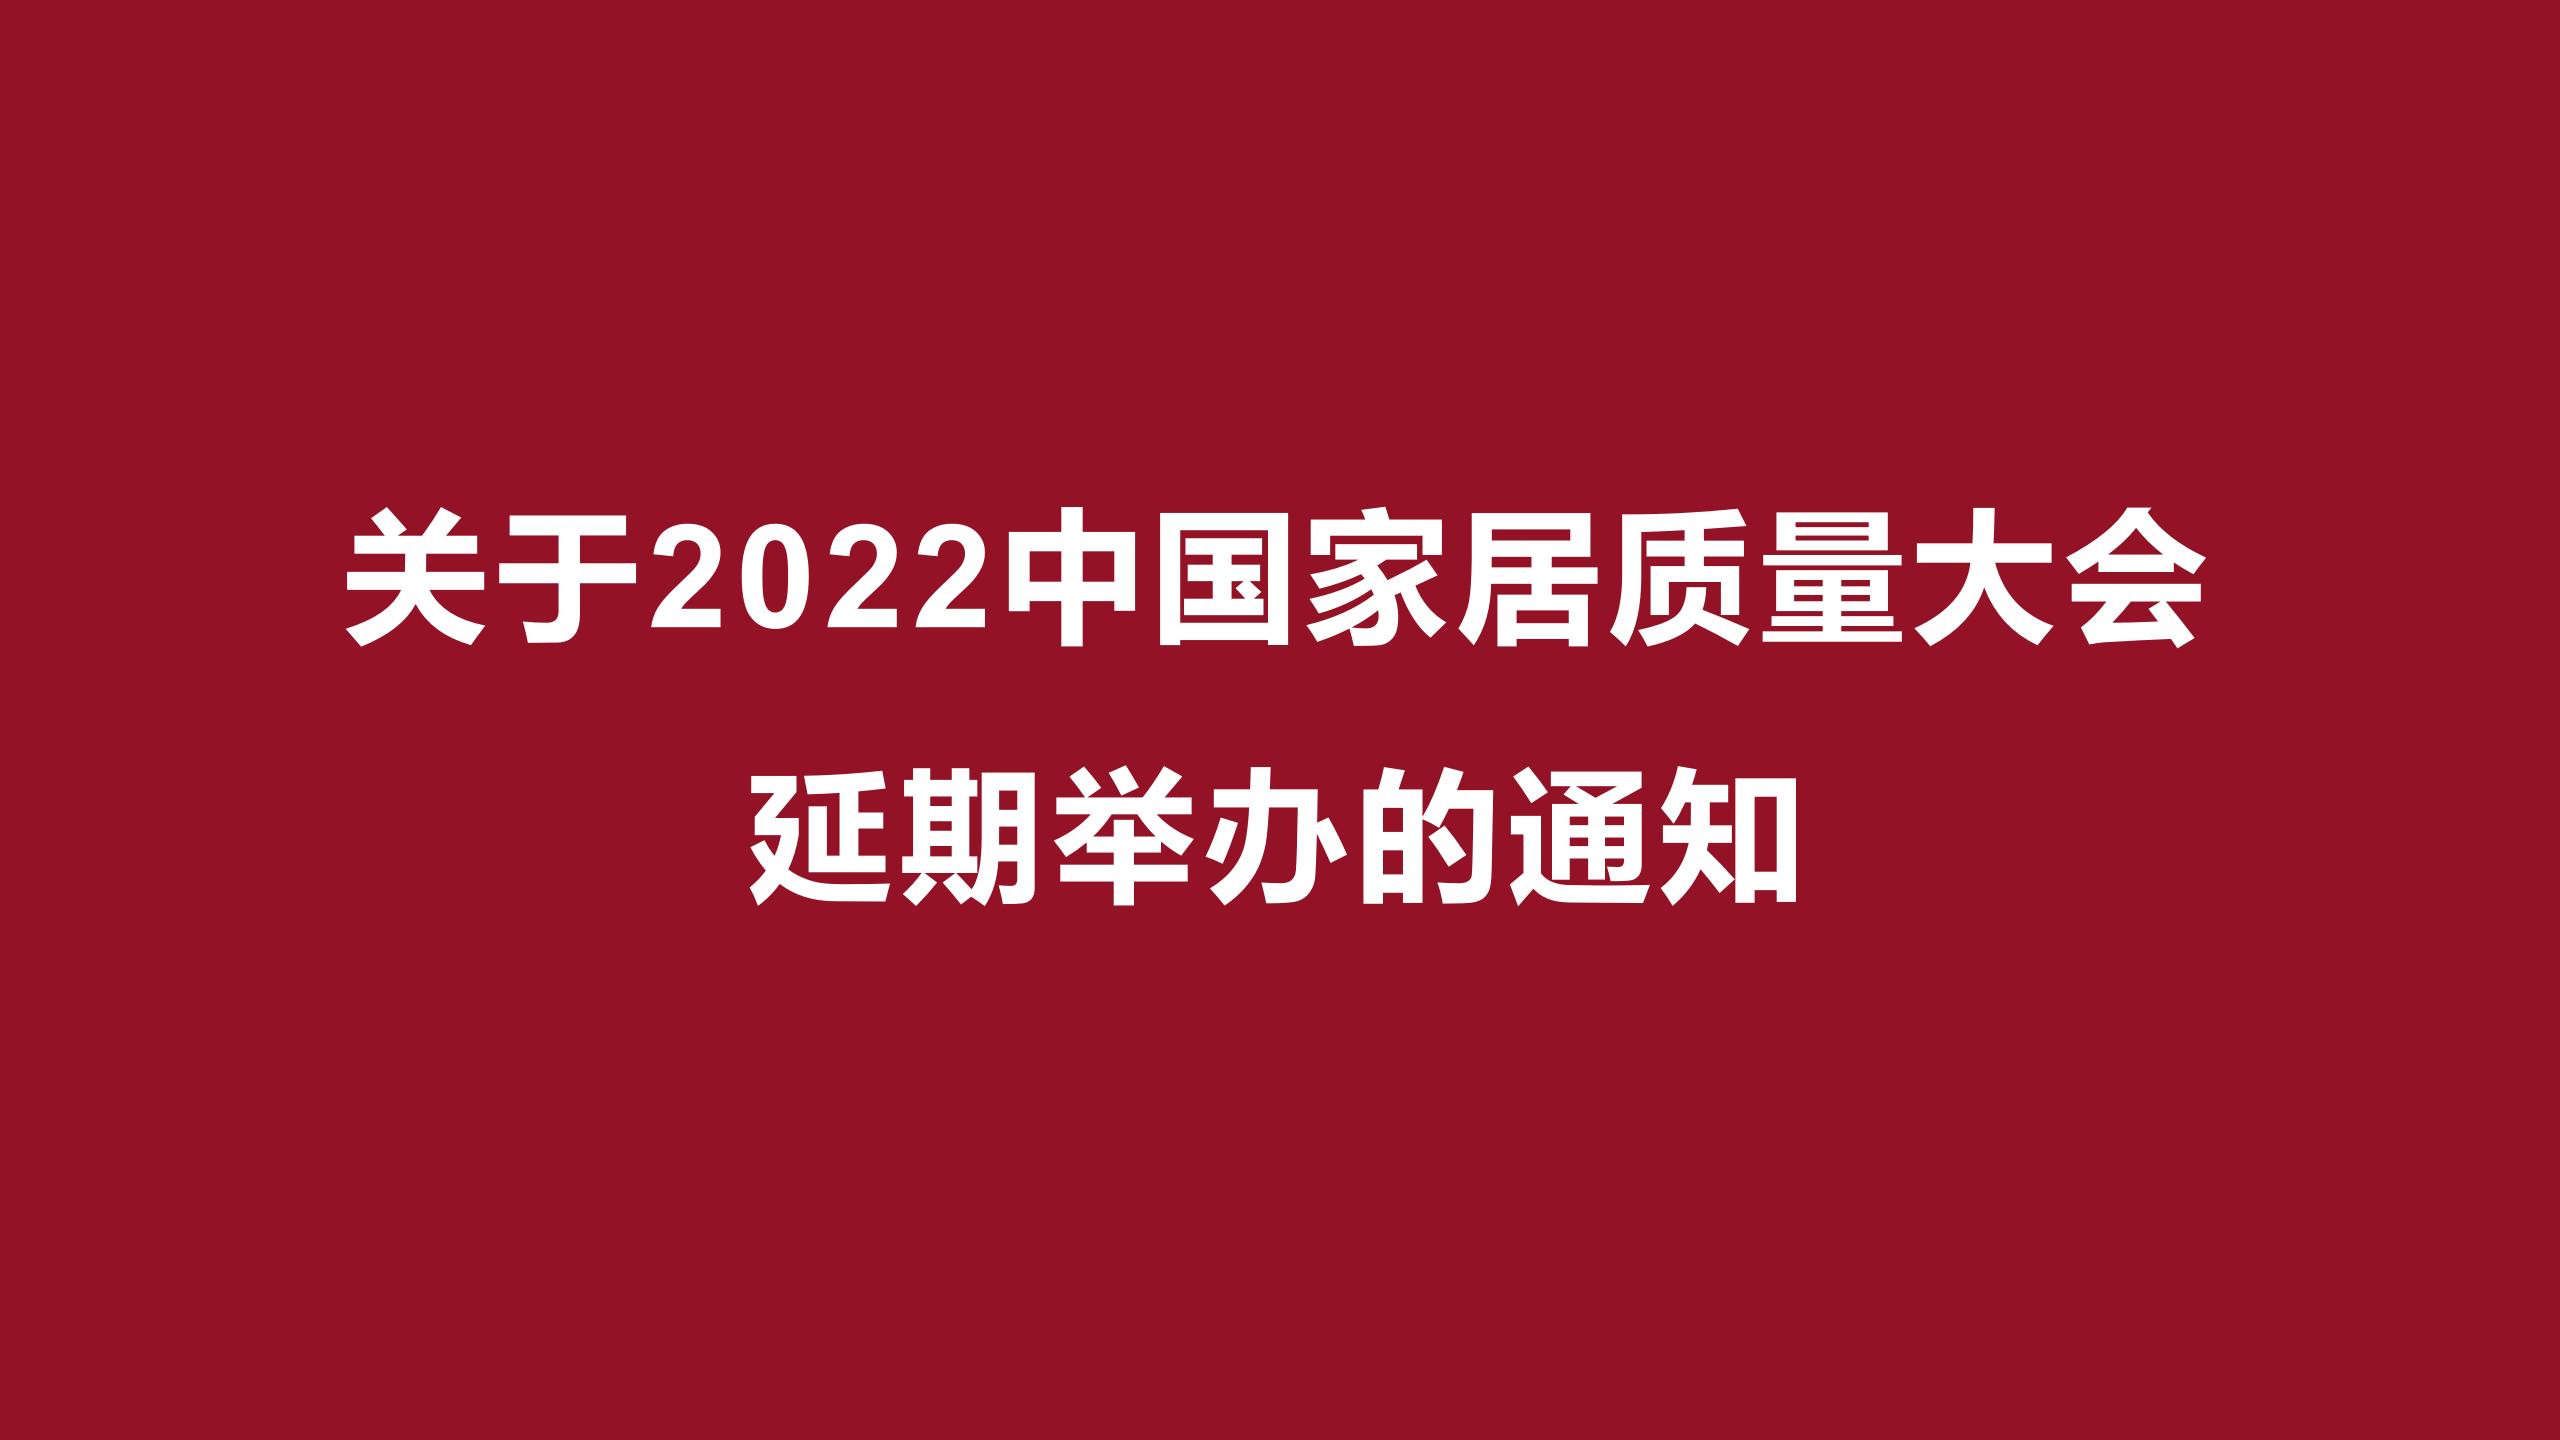 关于2022中国家居质量大会延期举办的通知